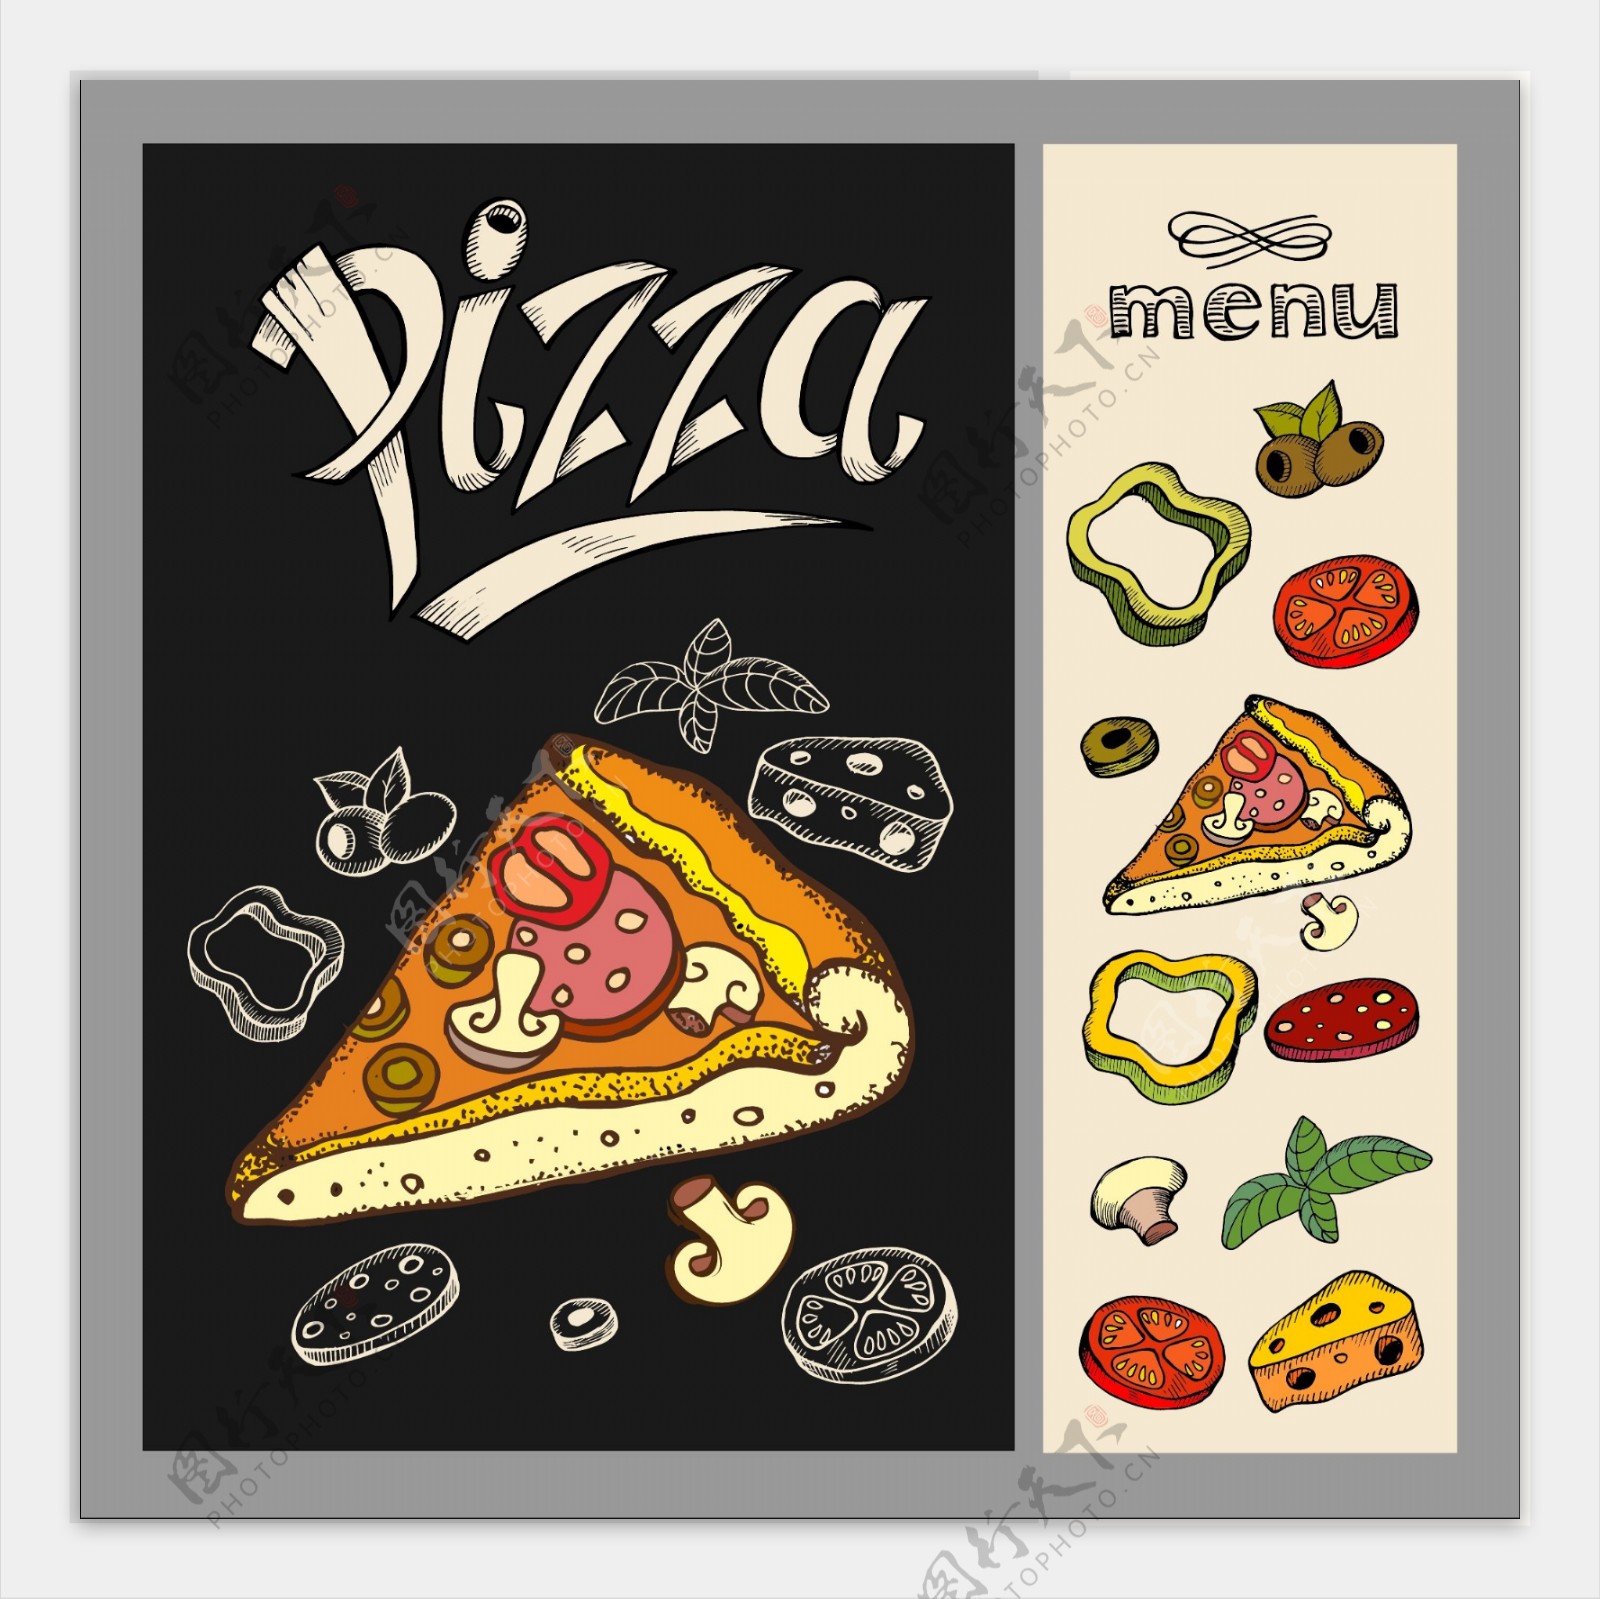 美味的快餐披萨插画